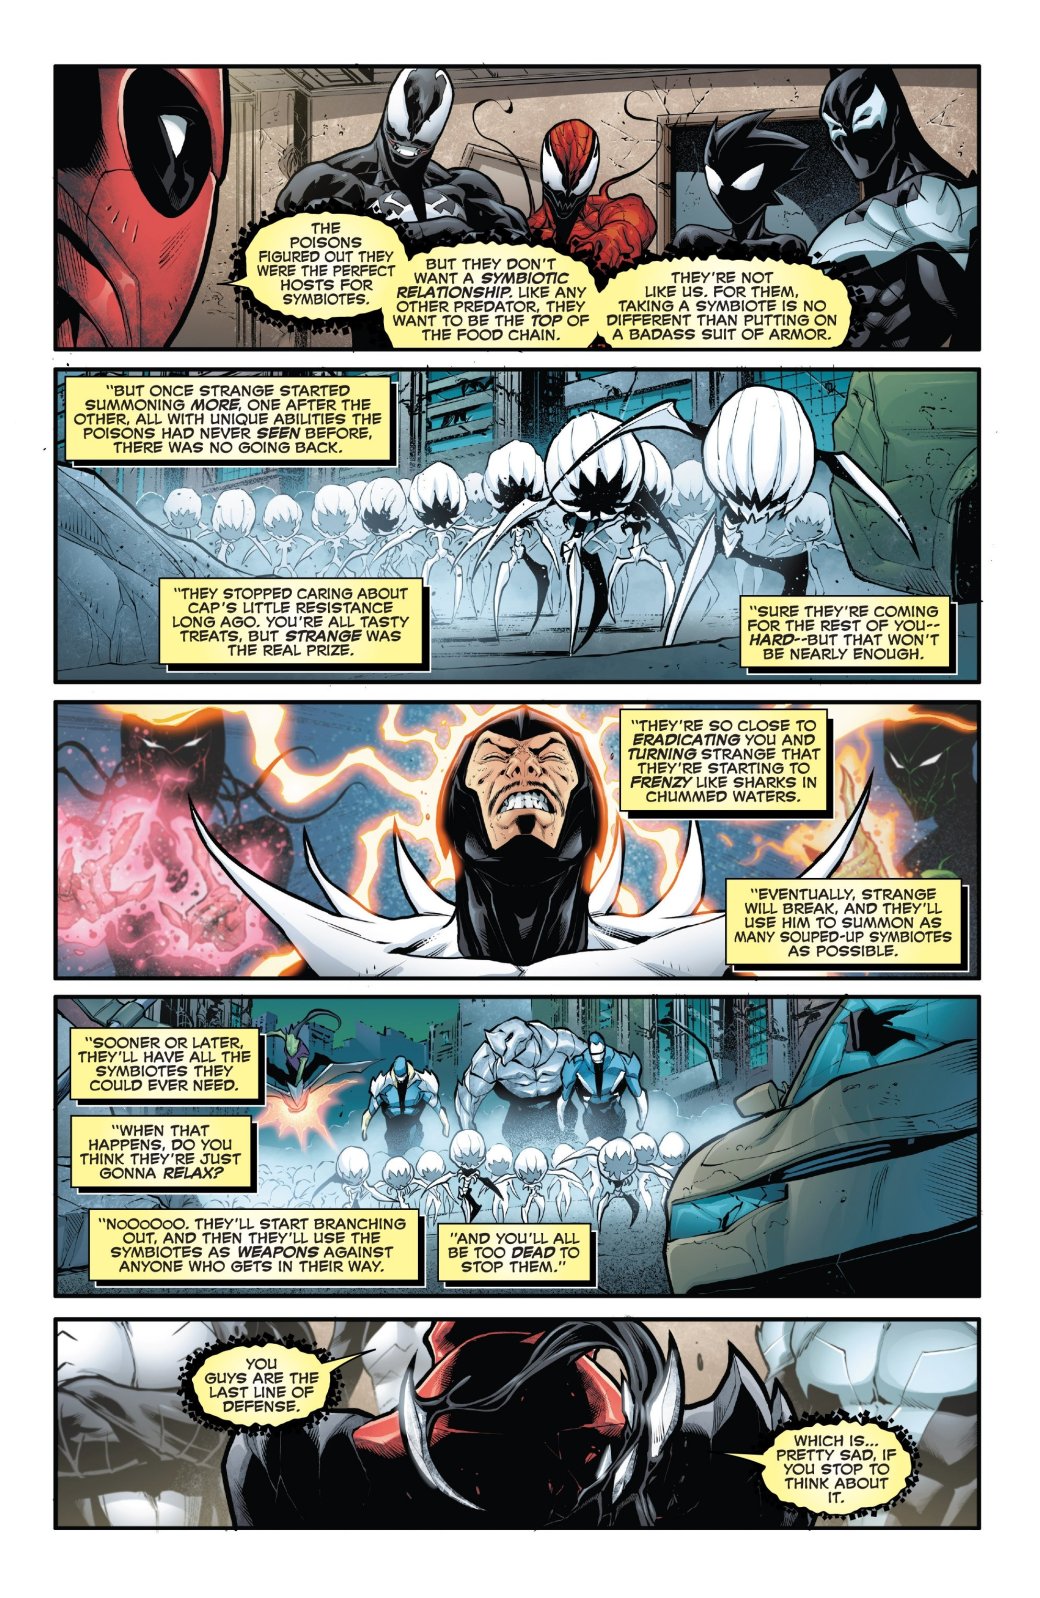 Venomverse: теперь мы больше знаем о загадочной расе Пойзонов, с которыми воюют симбиоты. - Изображение 2